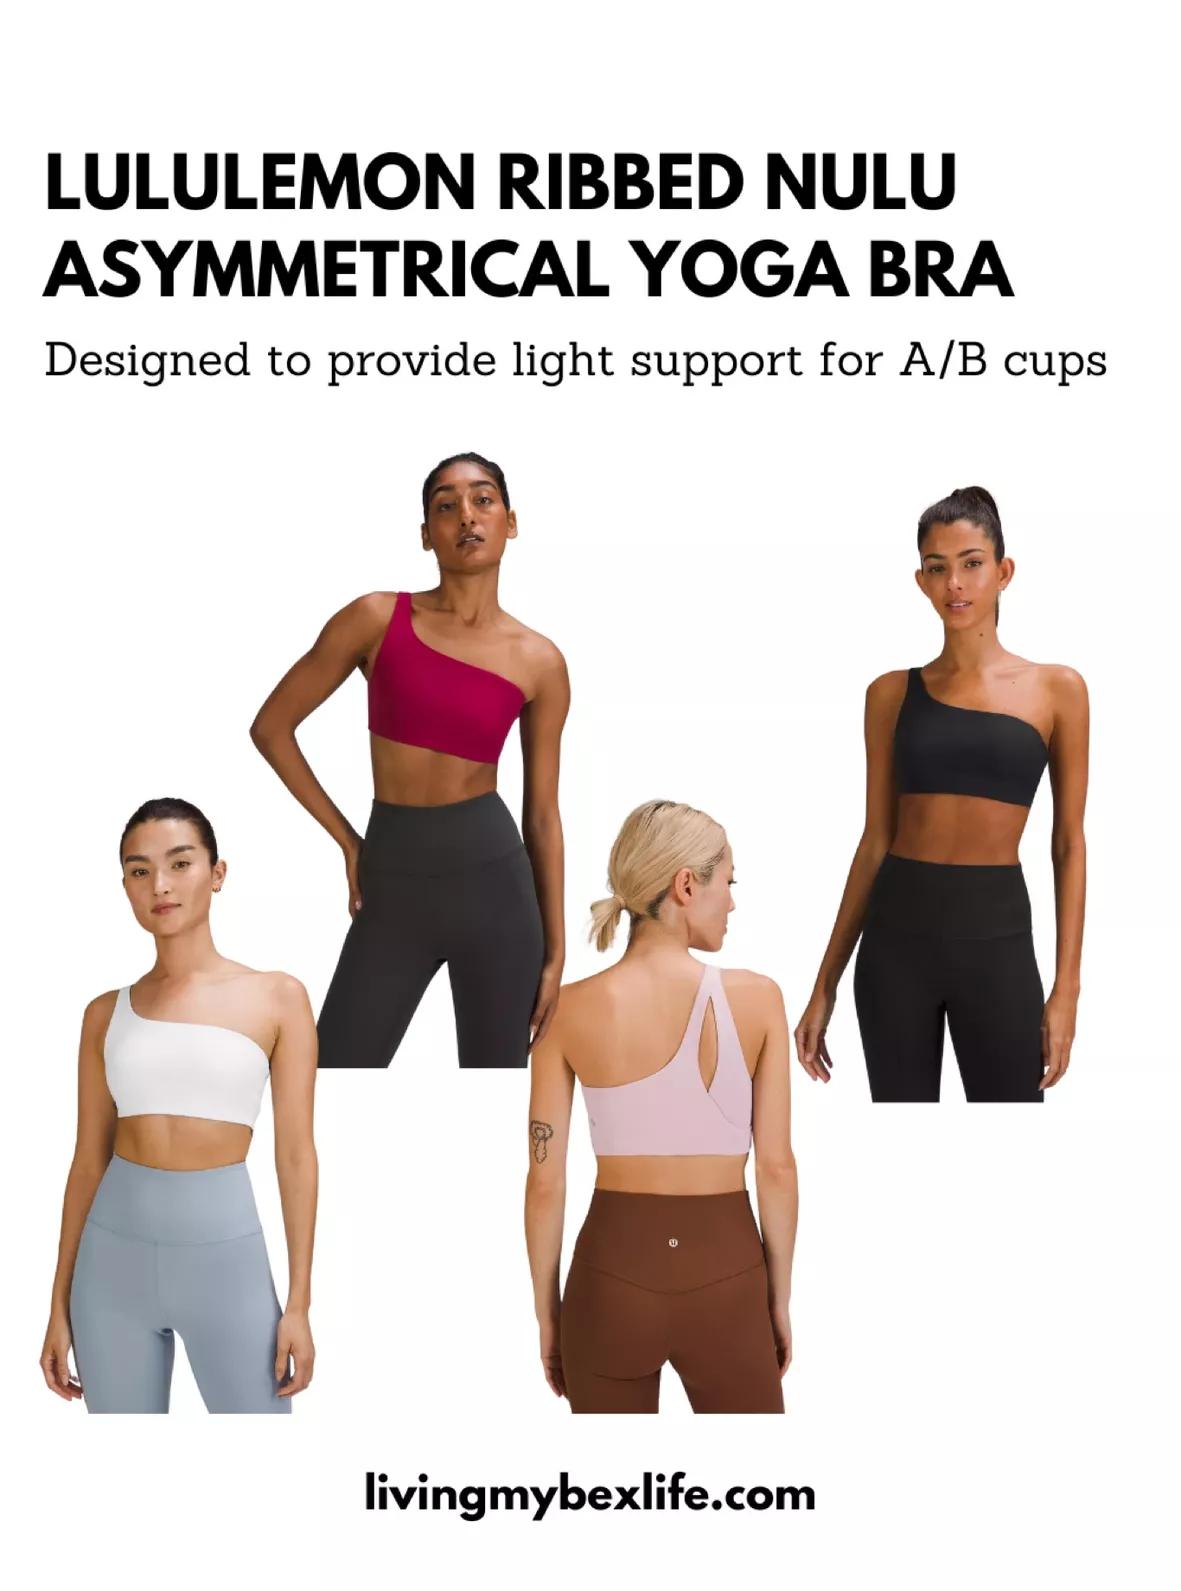 Ribbed Nulu Asymmetrical Yoga Bra … curated on LTK